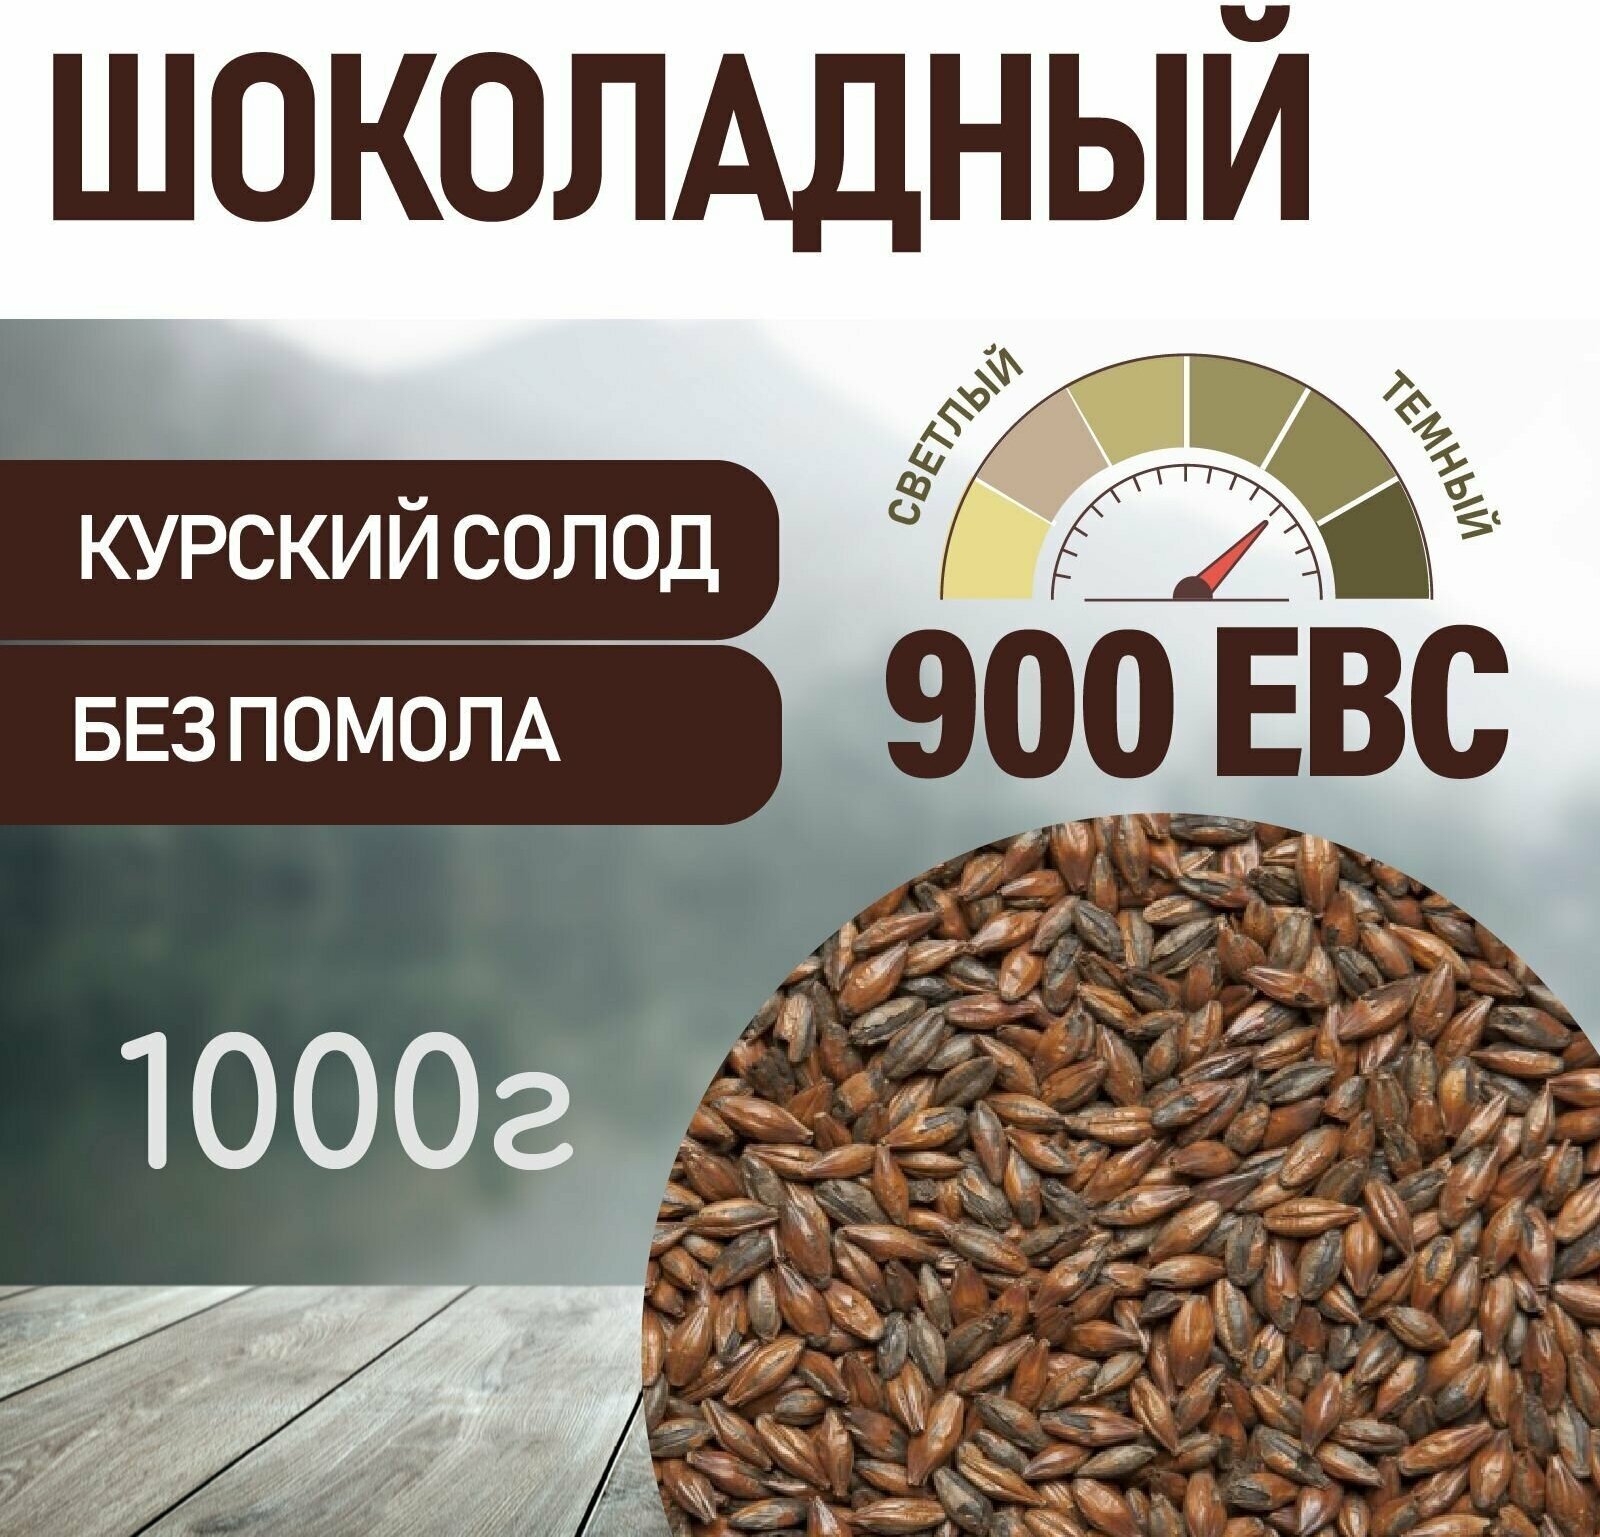 Солод ячменный шоколадный EBC 900 (Курский солод) 1 КГ